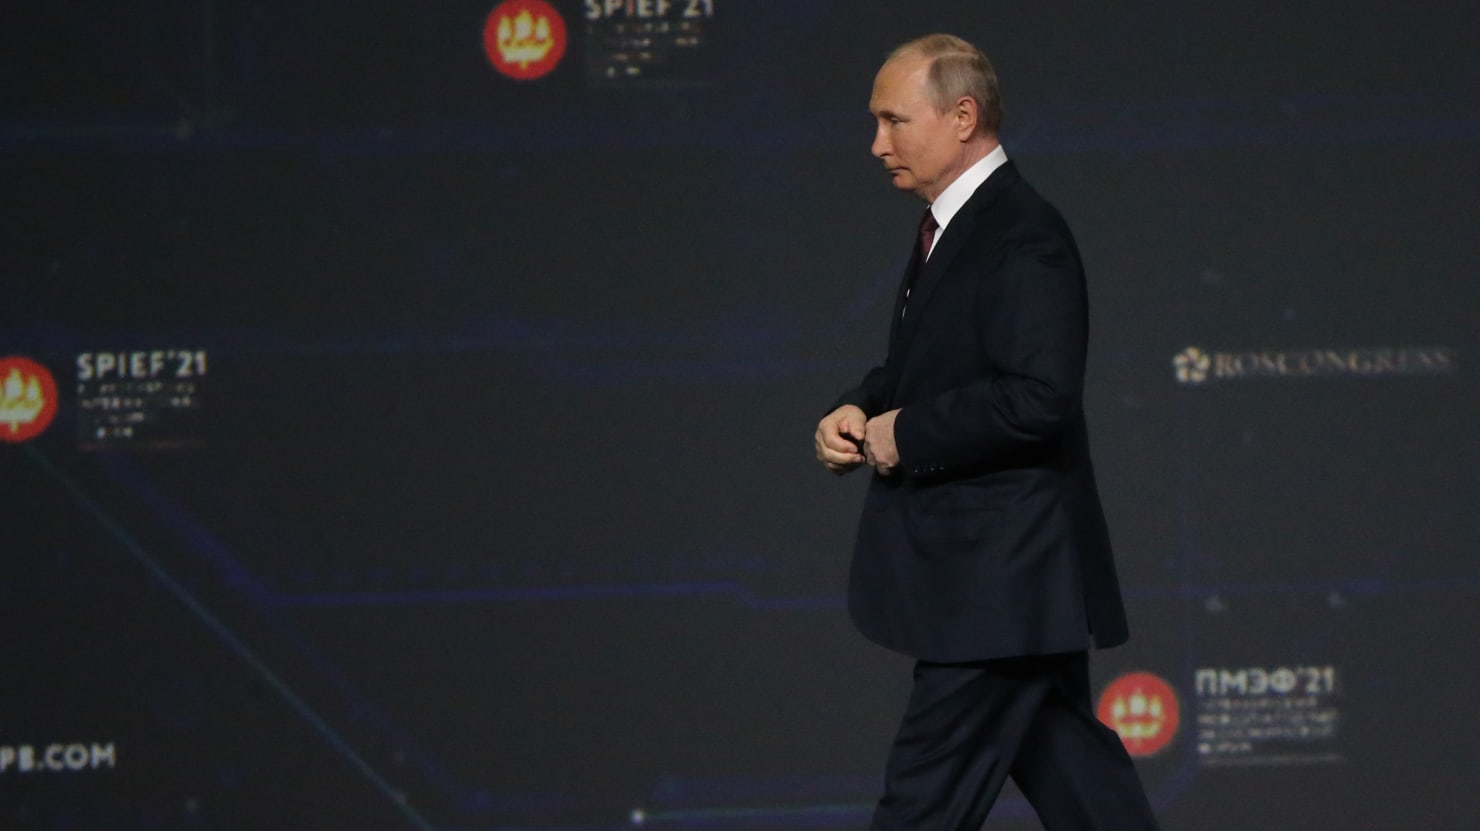 Diễn đàn kinh tế “Davos của Nga” tại St.Petersburg thực sự là một mớ hỗn độn lớn và đáng buồn